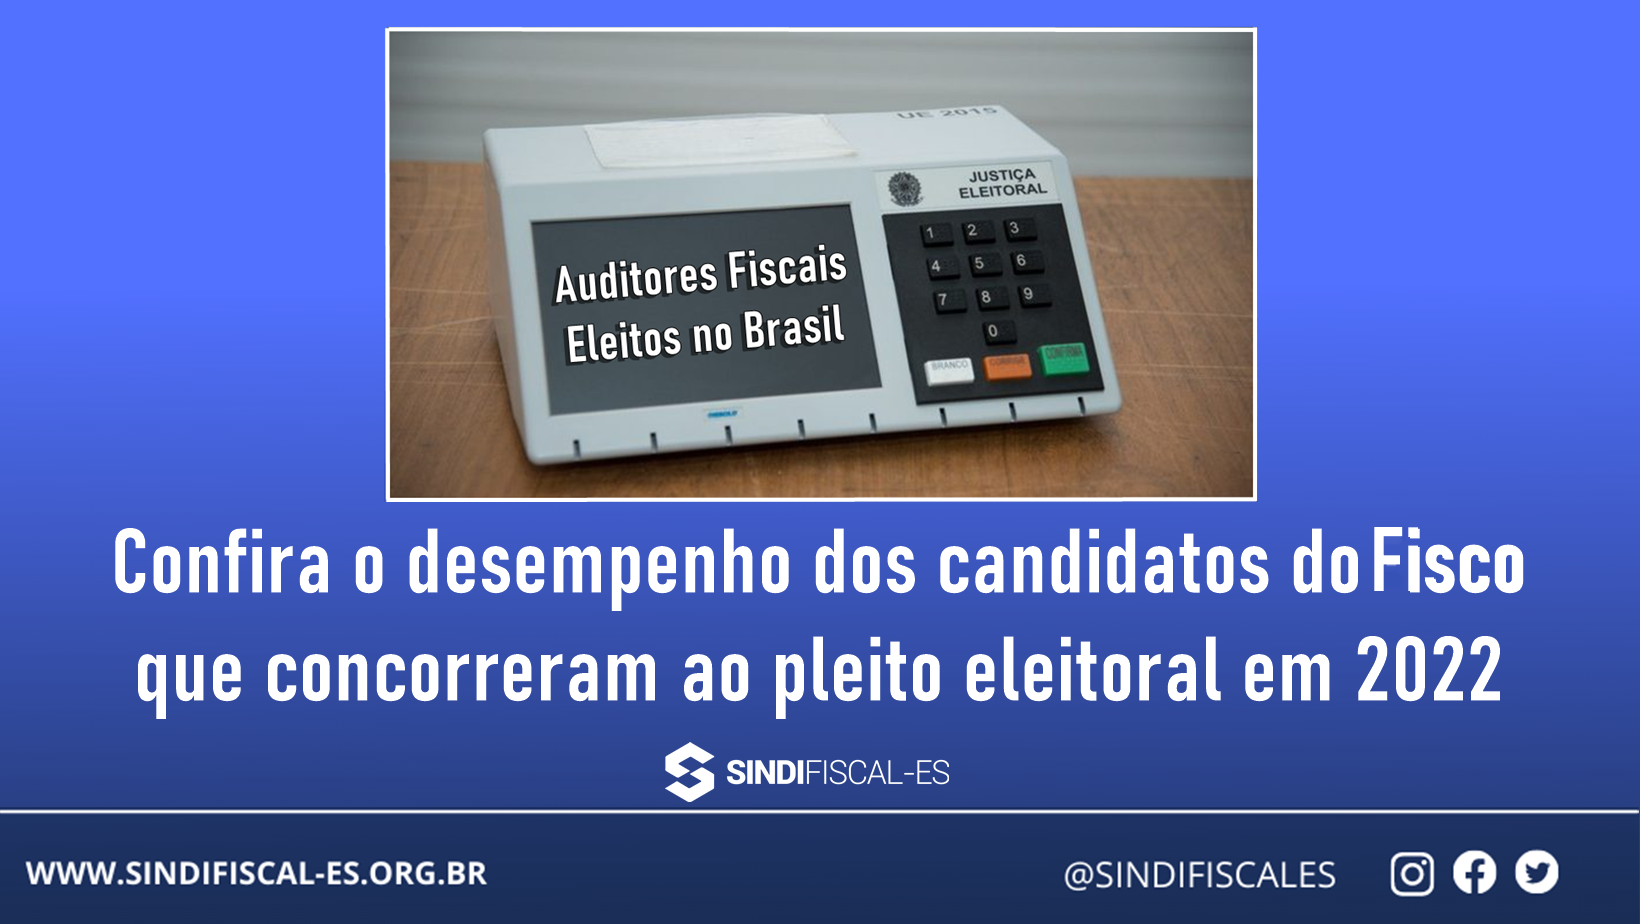 Confira o desempenho dos candidatos do Fisco que concorreram ao pleito eleitoral em 2022